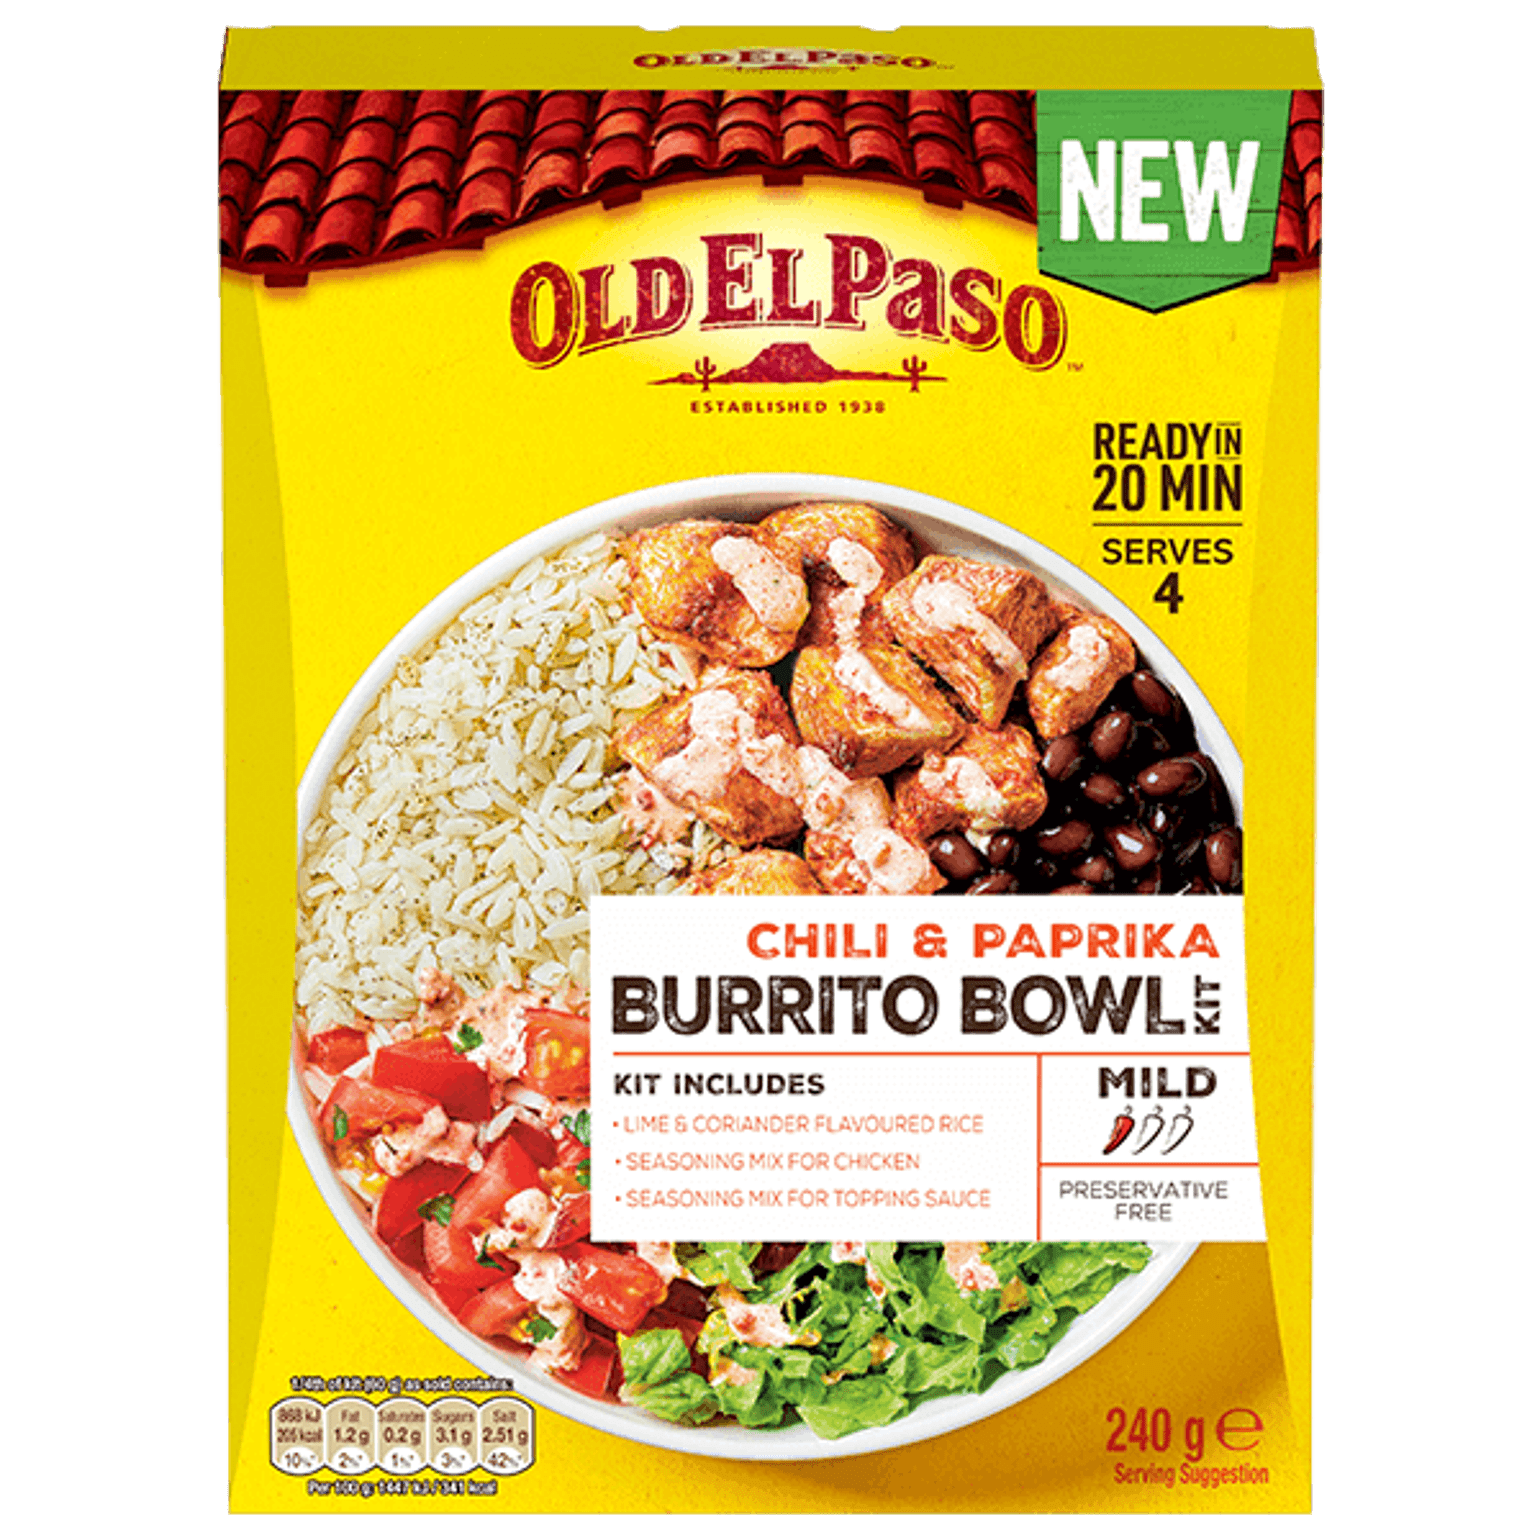 pack of Old El Paso's chili paprika burrito bowl kit (240g)